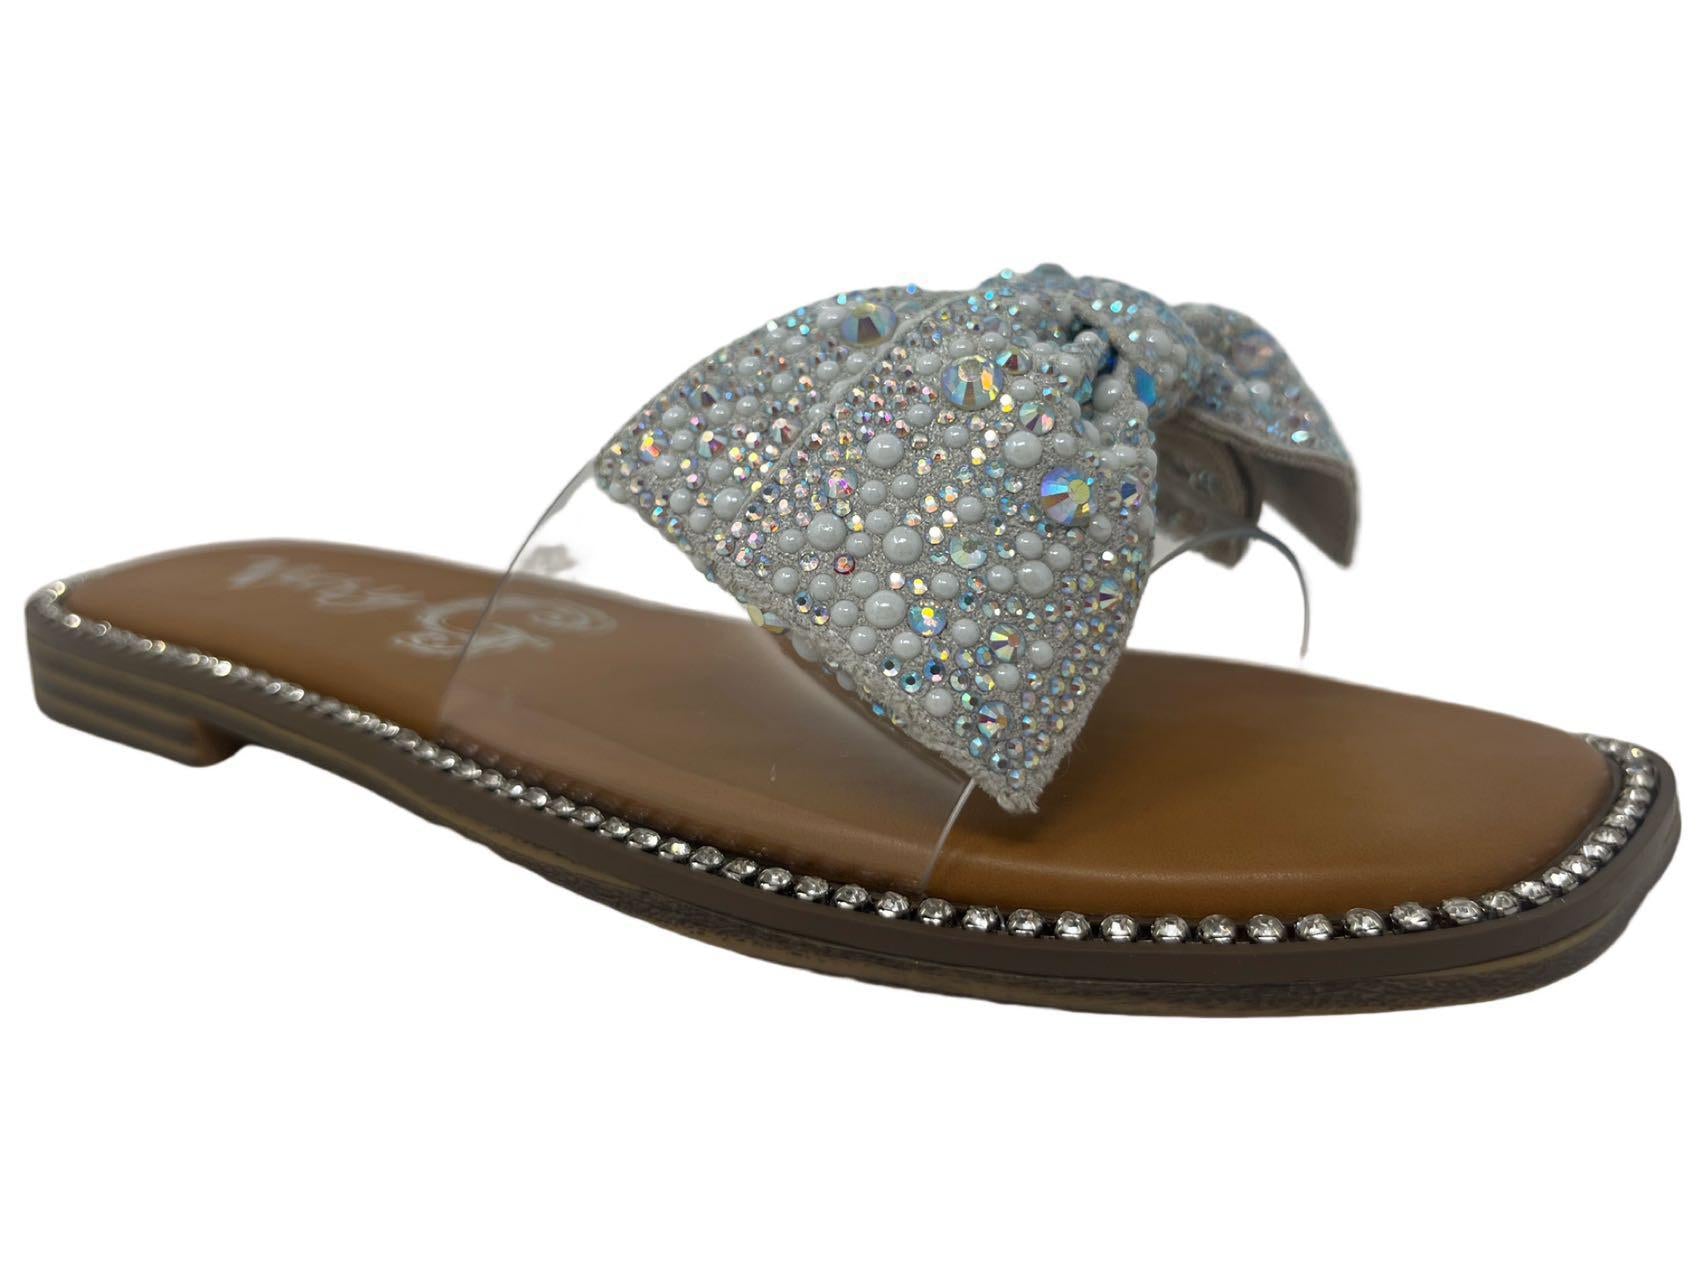 Jessica Jeweled Sandals